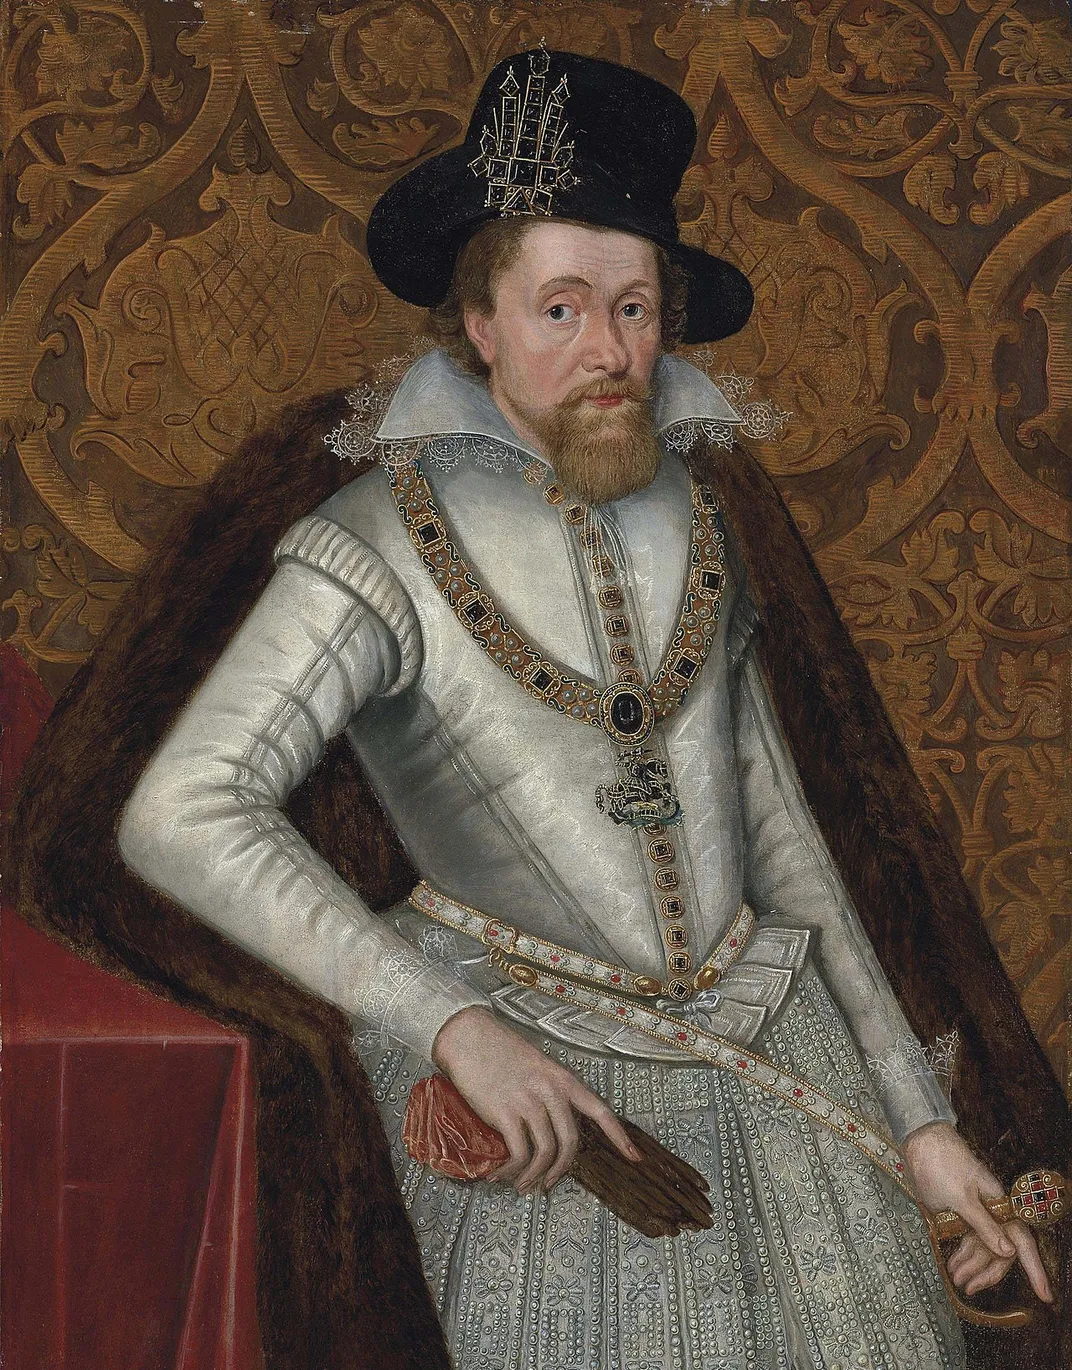 A portrait of James by John de Critz